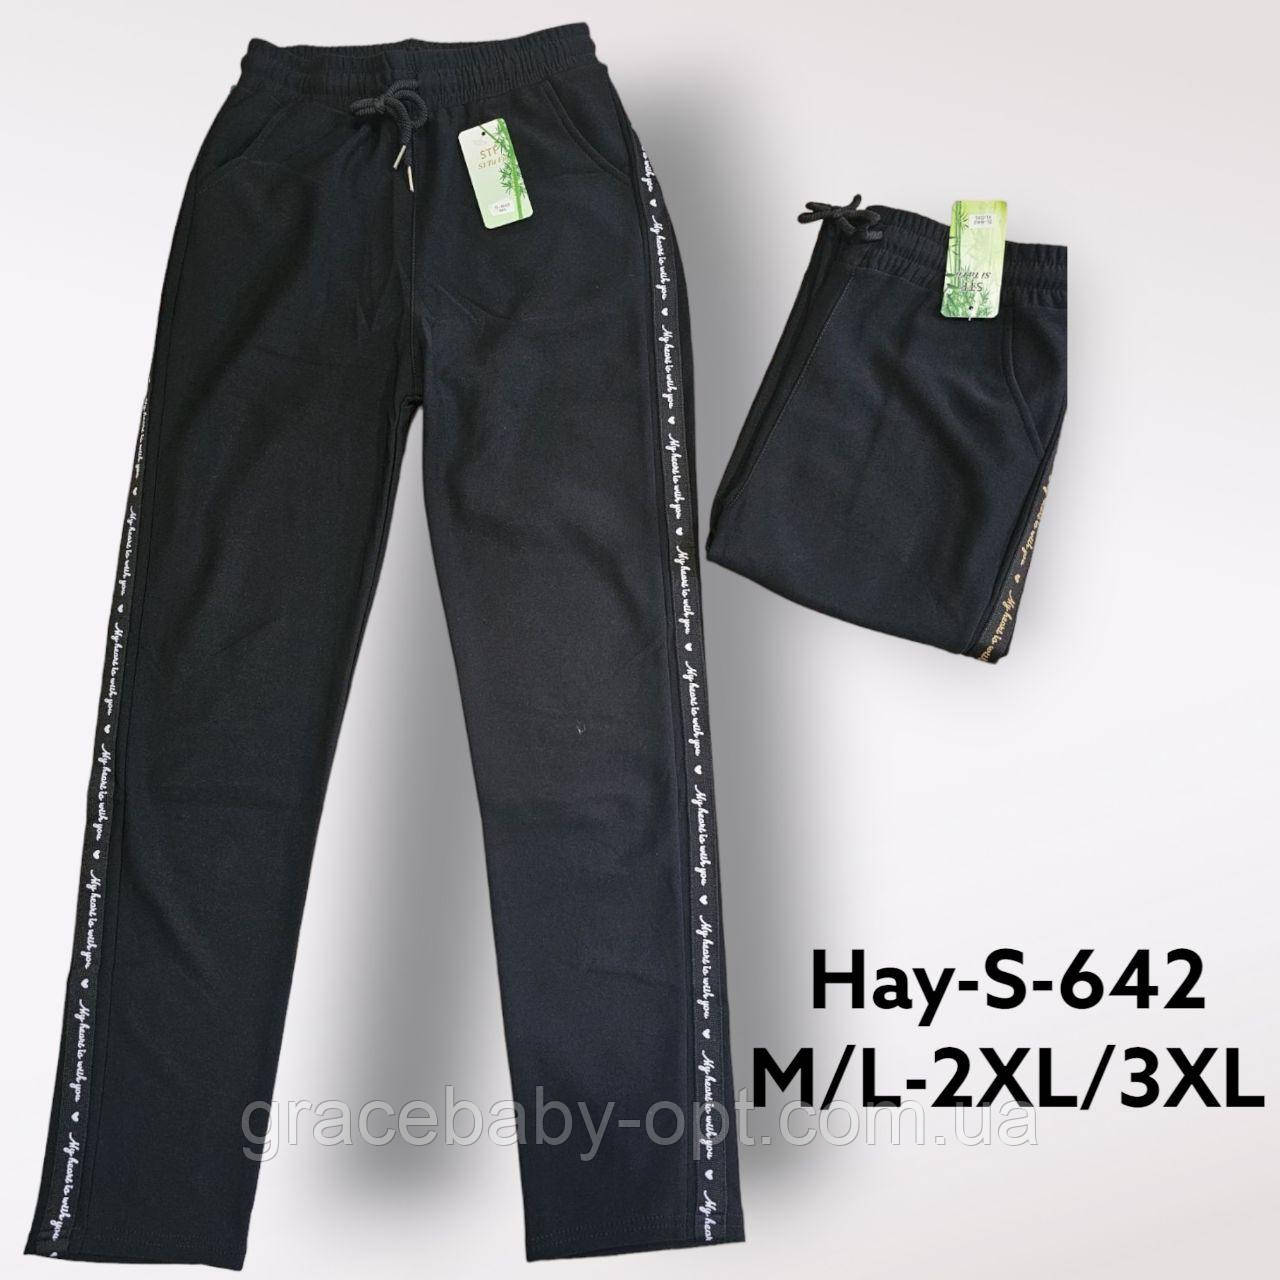 Спортивні штани жіночі оптом, M/L-2XL/3XL рр.,  № Hay-S-642